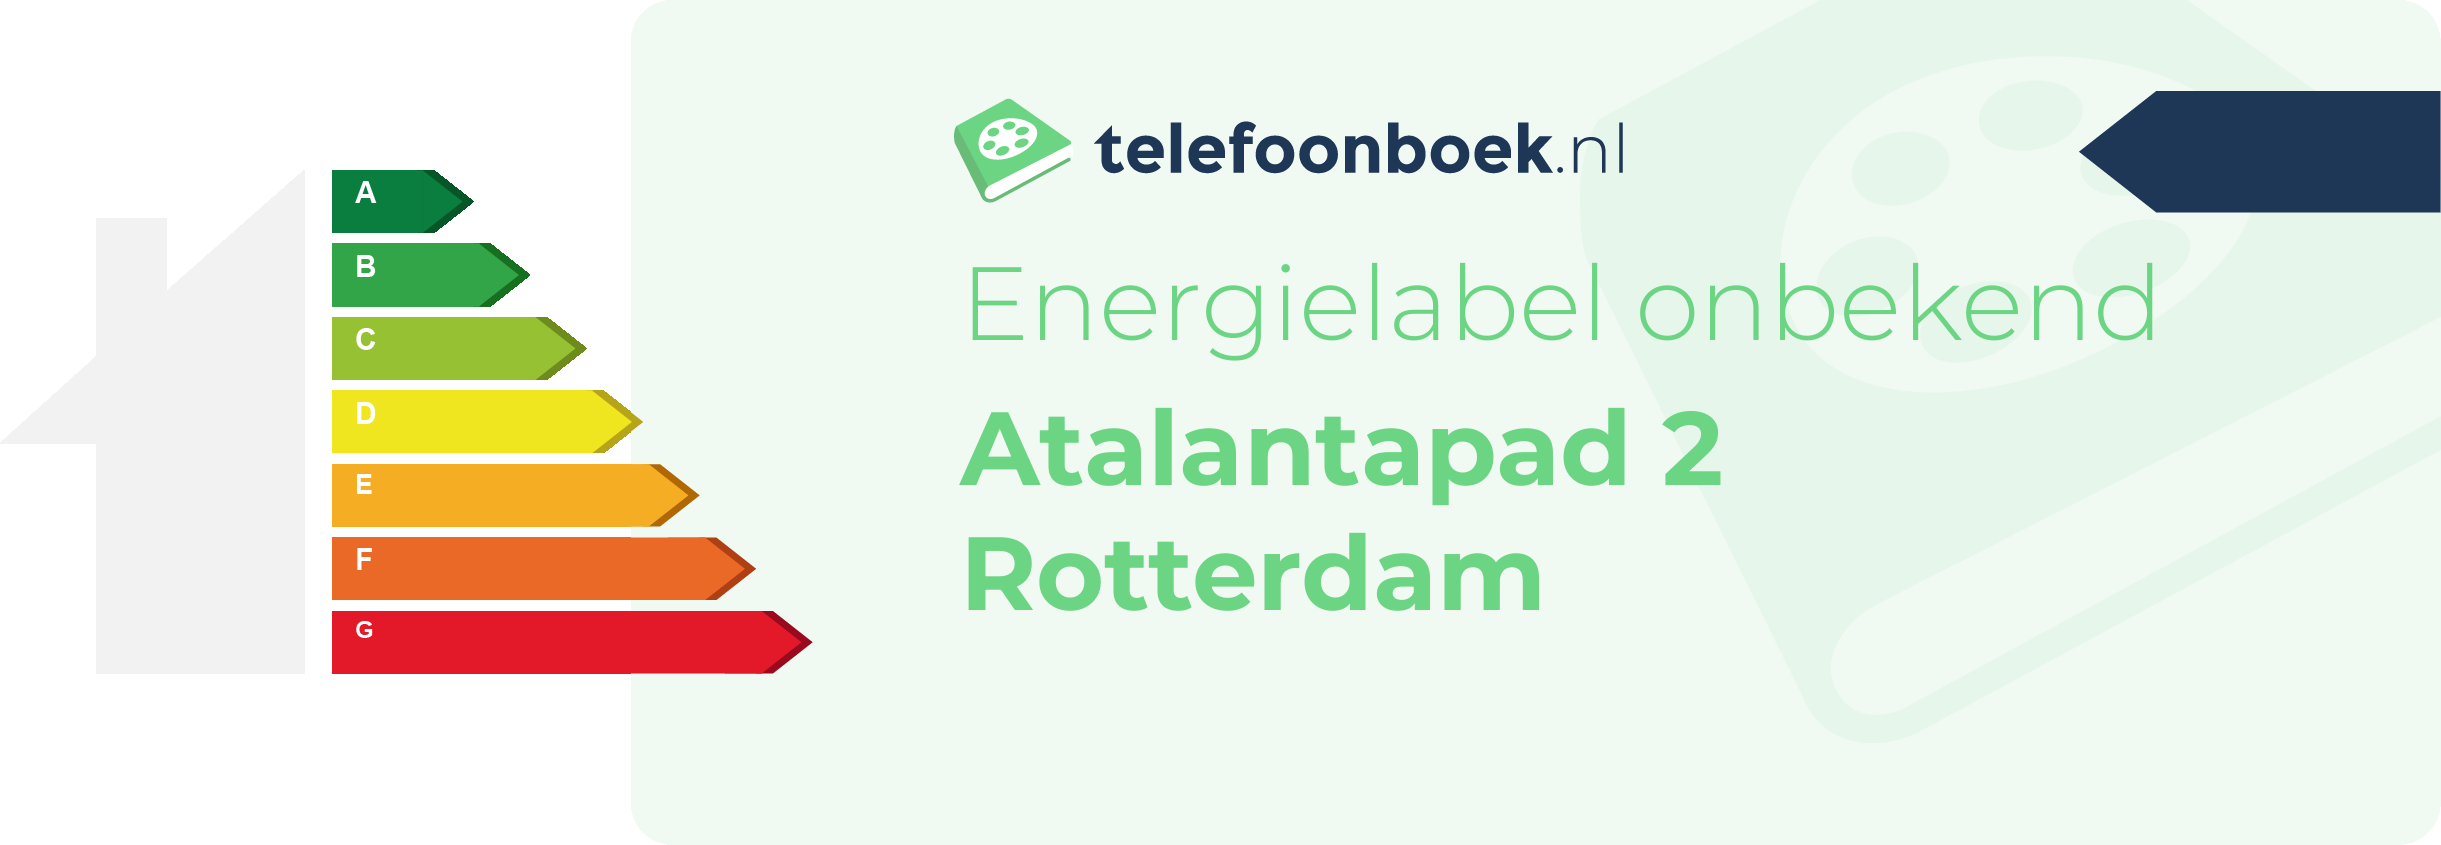 Energielabel Atalantapad 2 Rotterdam